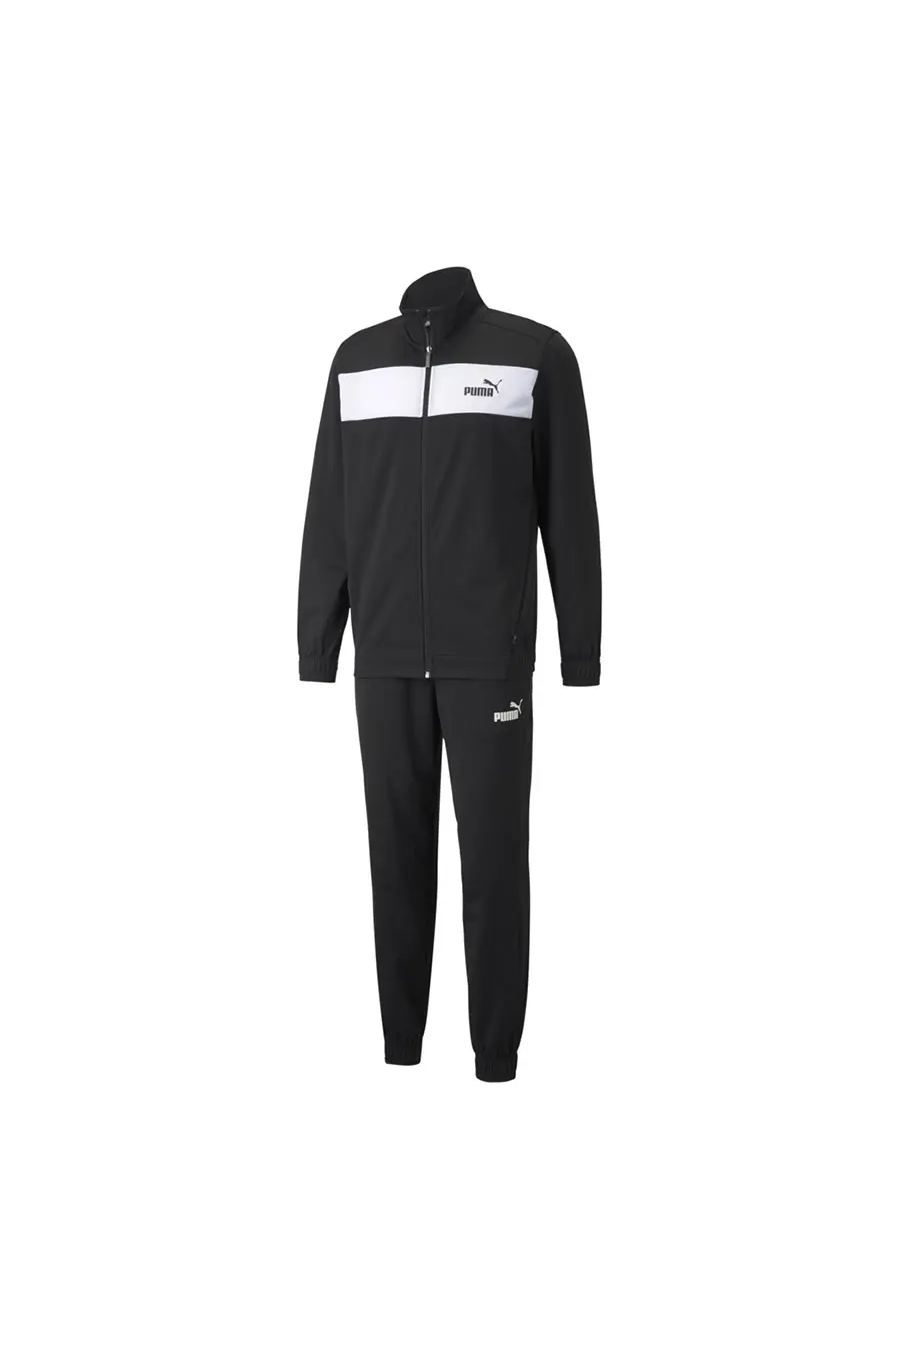 Chándal Puma Poly Suit Cl Black para hombre 84584401 - msdsport